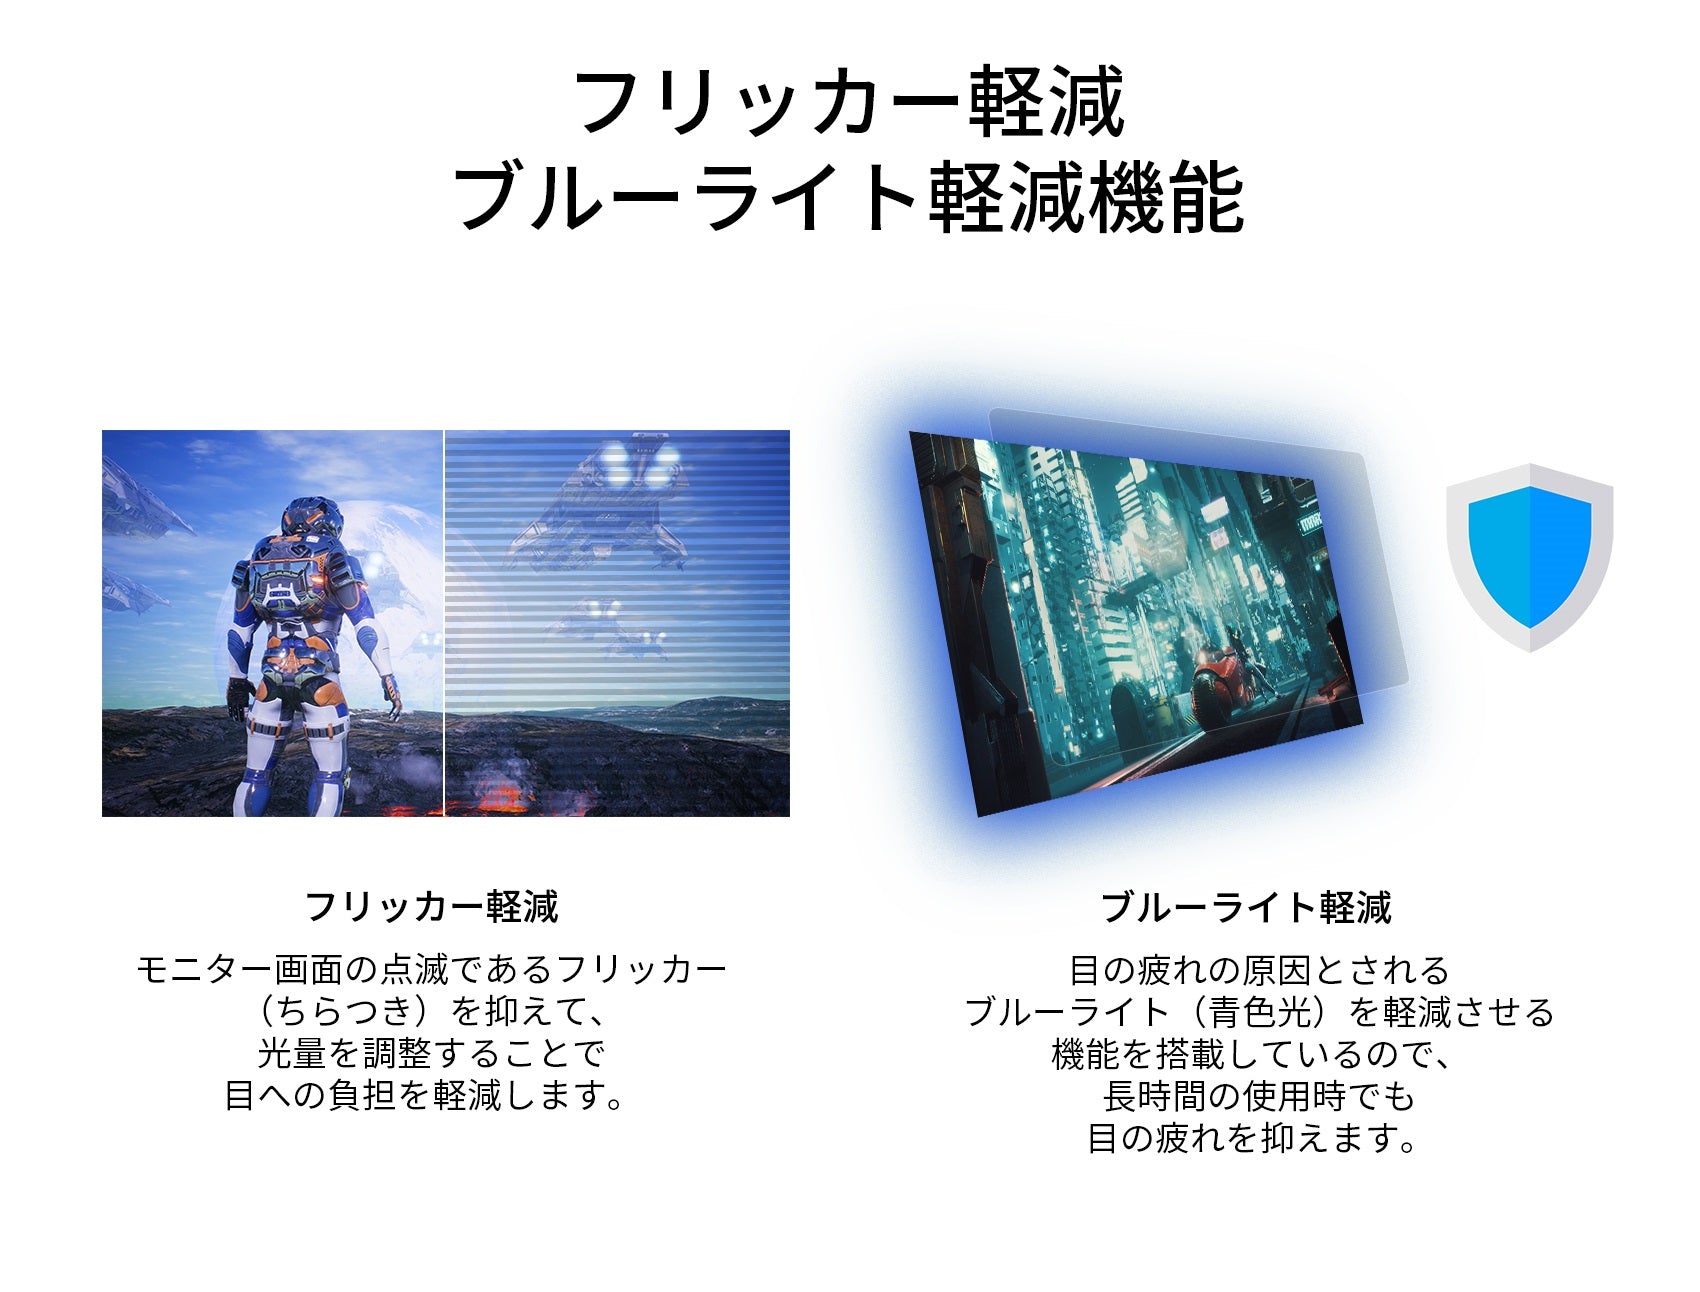 JAPANNEXT 23.3インチ ワイドFHD(2560 x 1080) 200Hz対応 ゲーミング